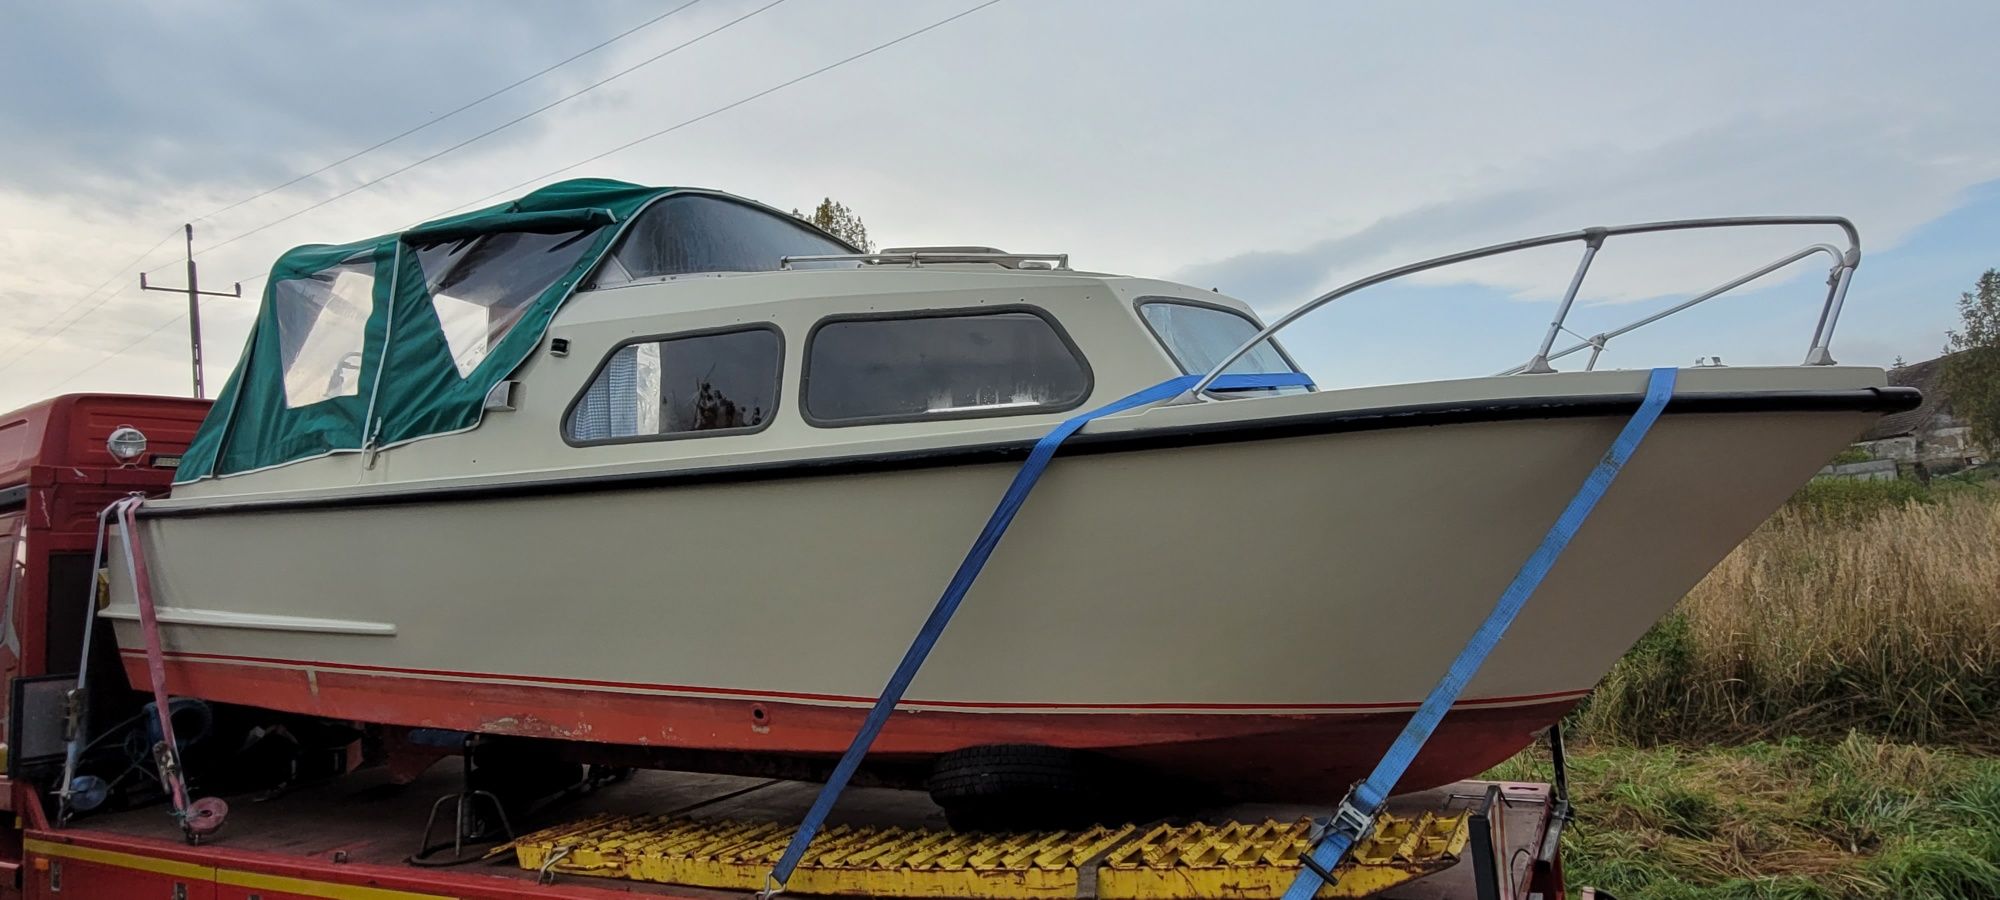 Waterland  700  łódź kabinowa Jacht kabinowy